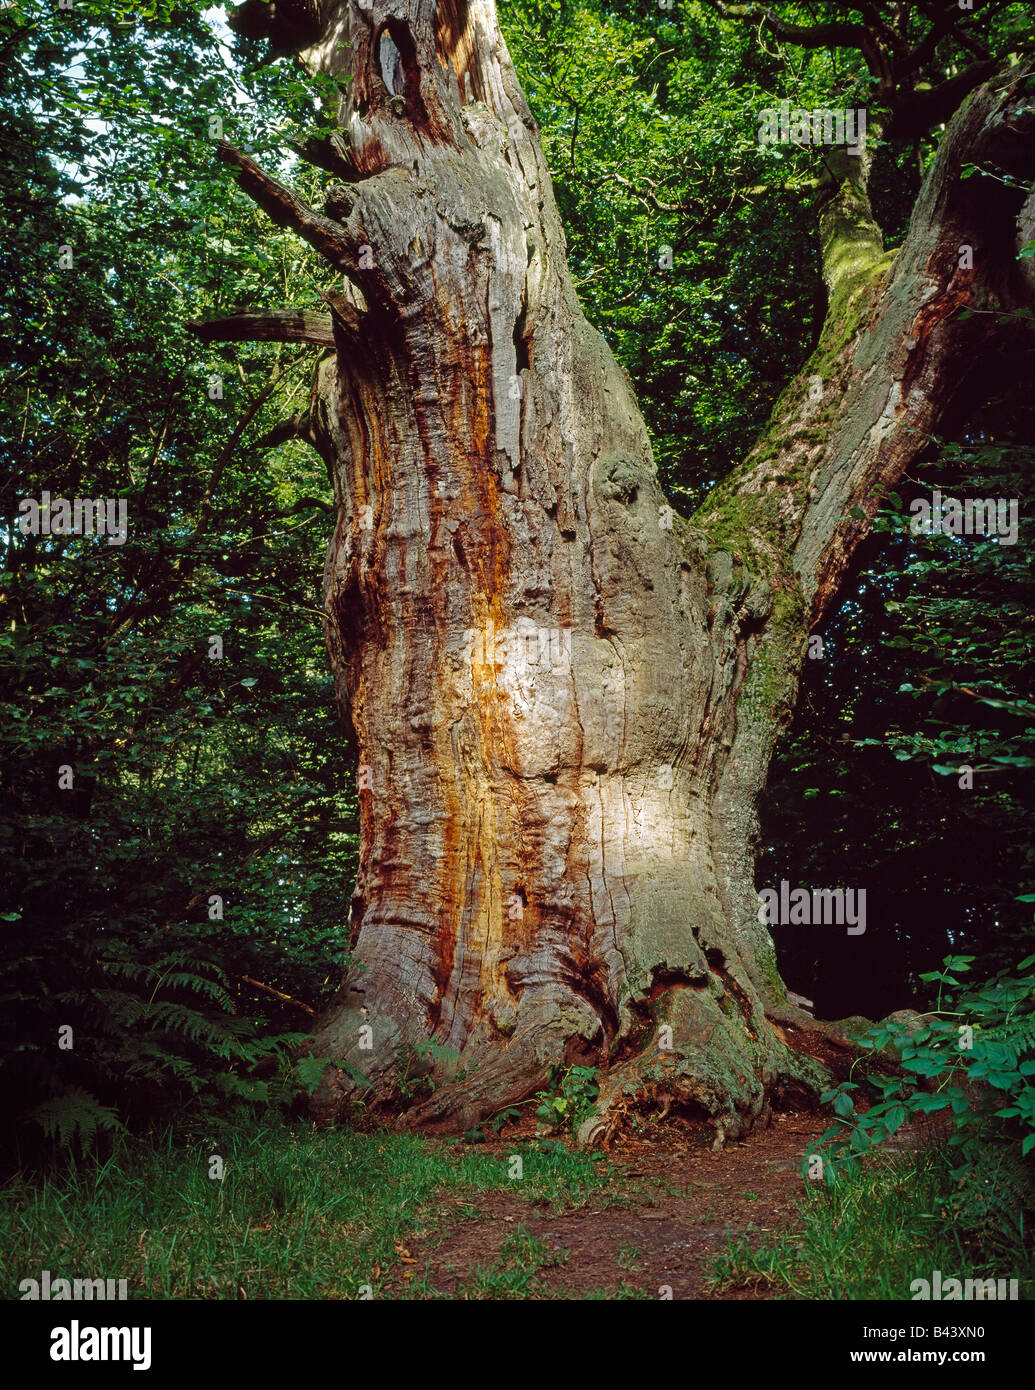 Viejo roble en el llamado "Bosque primario" de Sababurg en la alte Eiche Reinhardswald im Urwald Sababurg Foto de stock